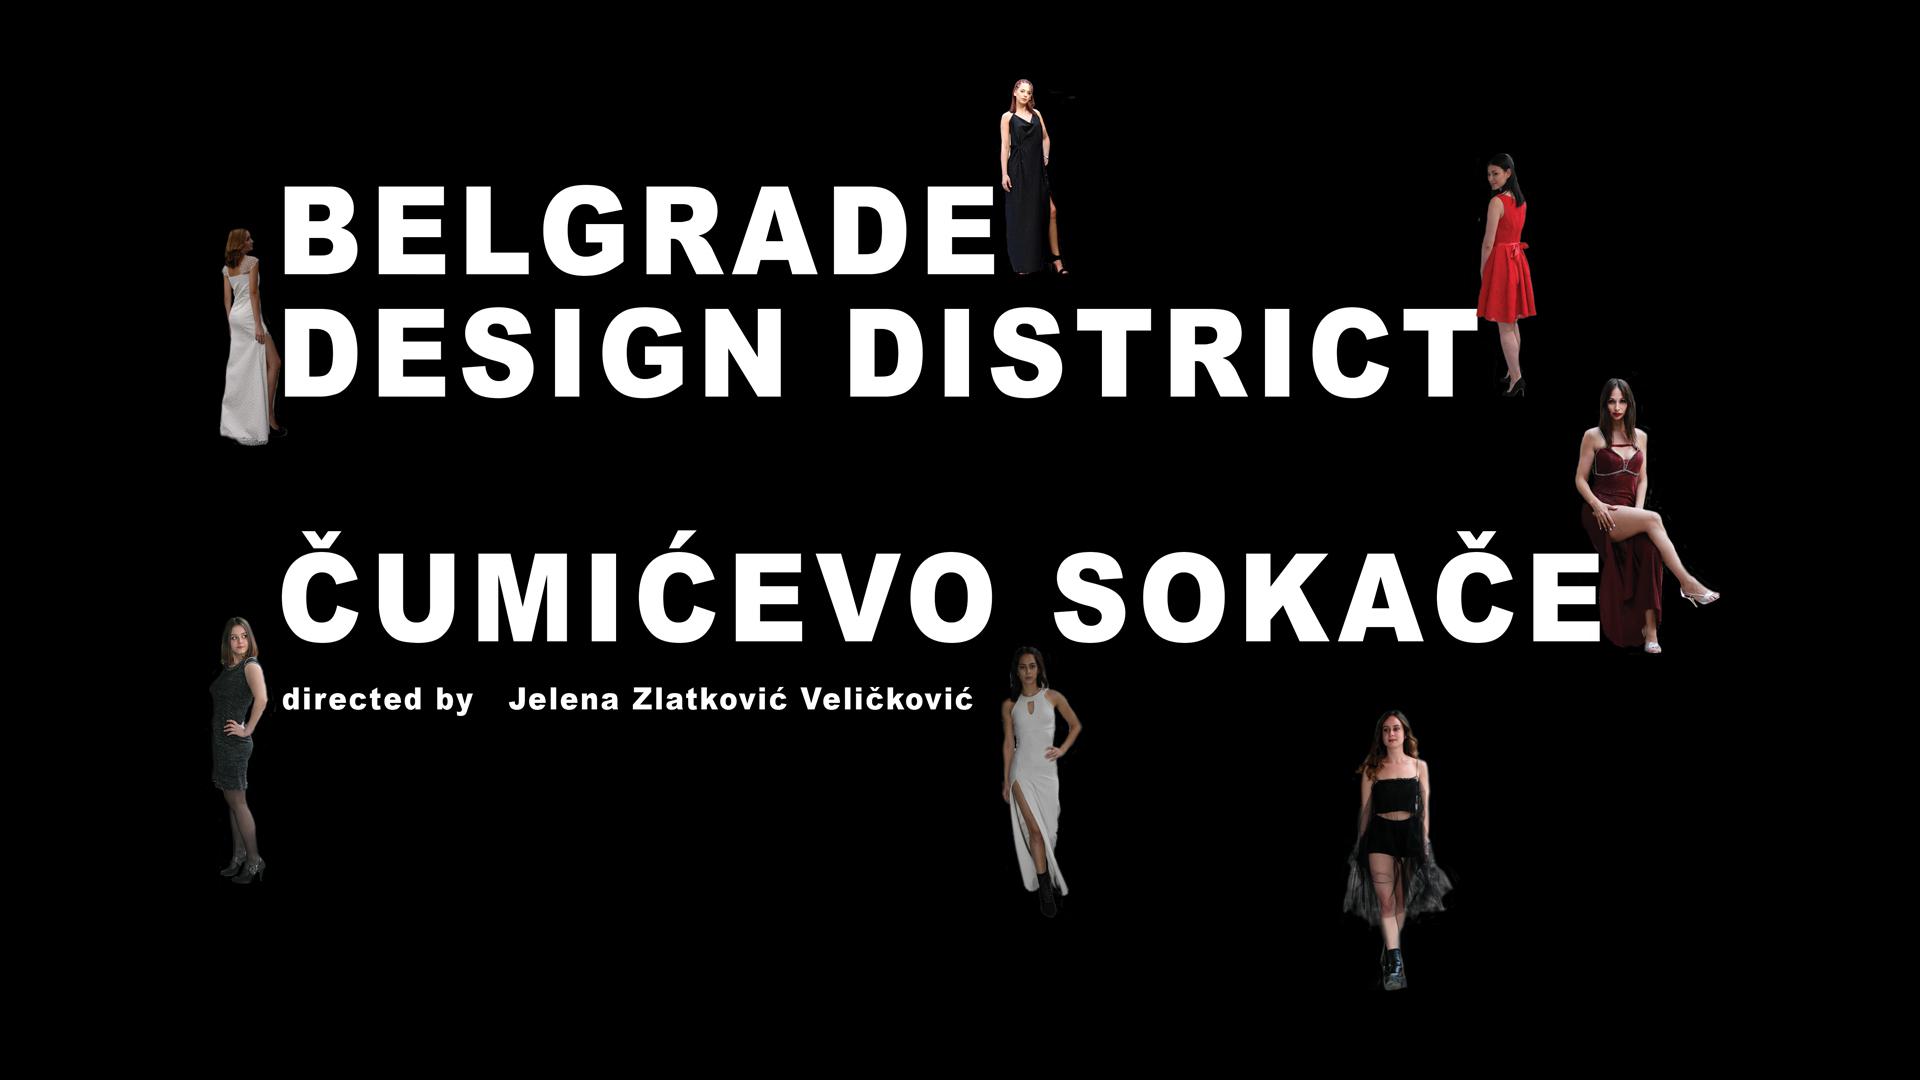 Belgrade design district Cumicevo sokace